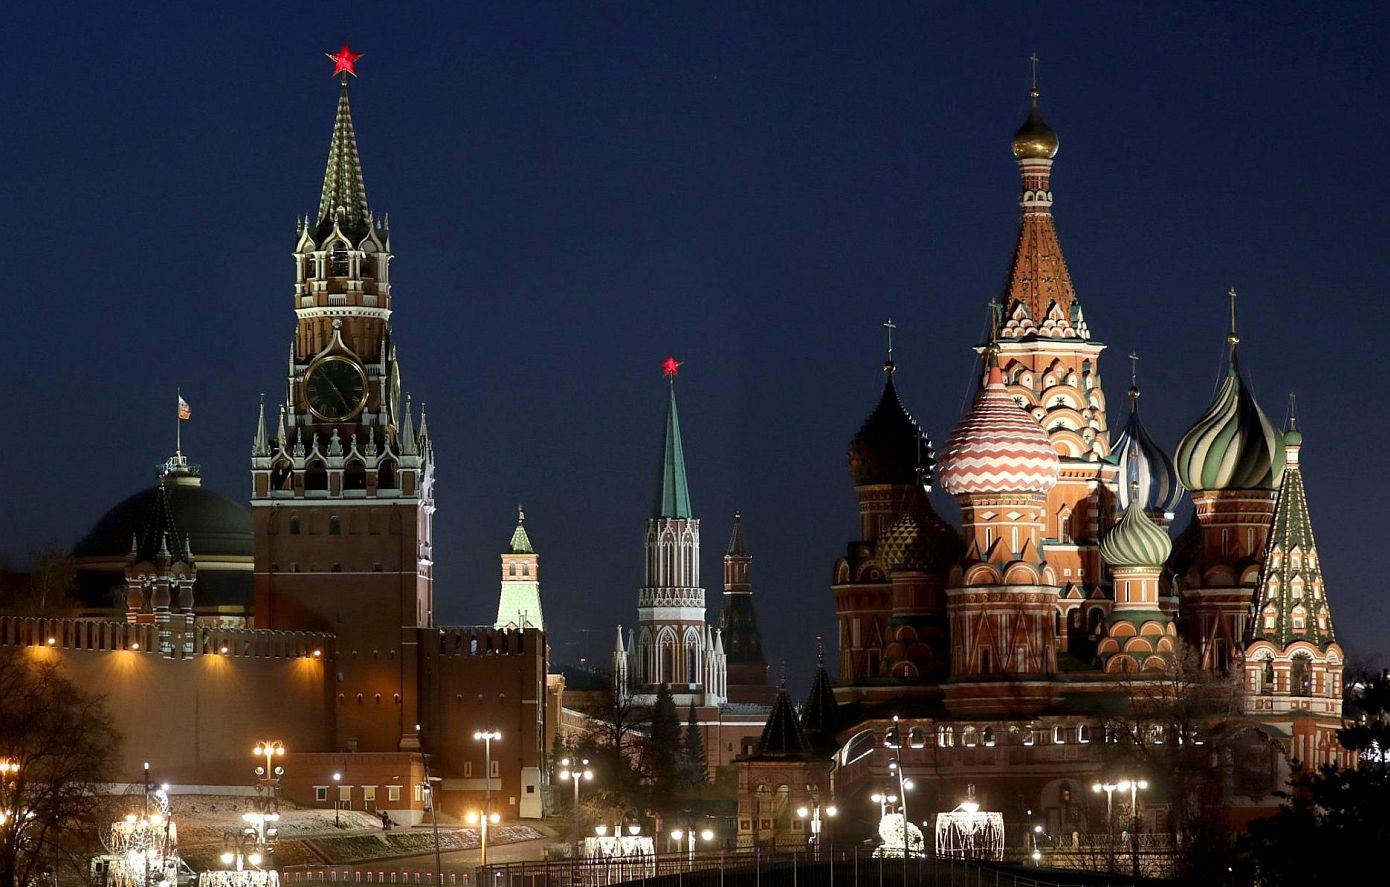 Η Μόσχα προειδοποίησε το Λονδίνο ότι θα μπορούσε να αντεπιτεθεί μετά τις δηλώσεις Κάμερον για την Ουκρανία